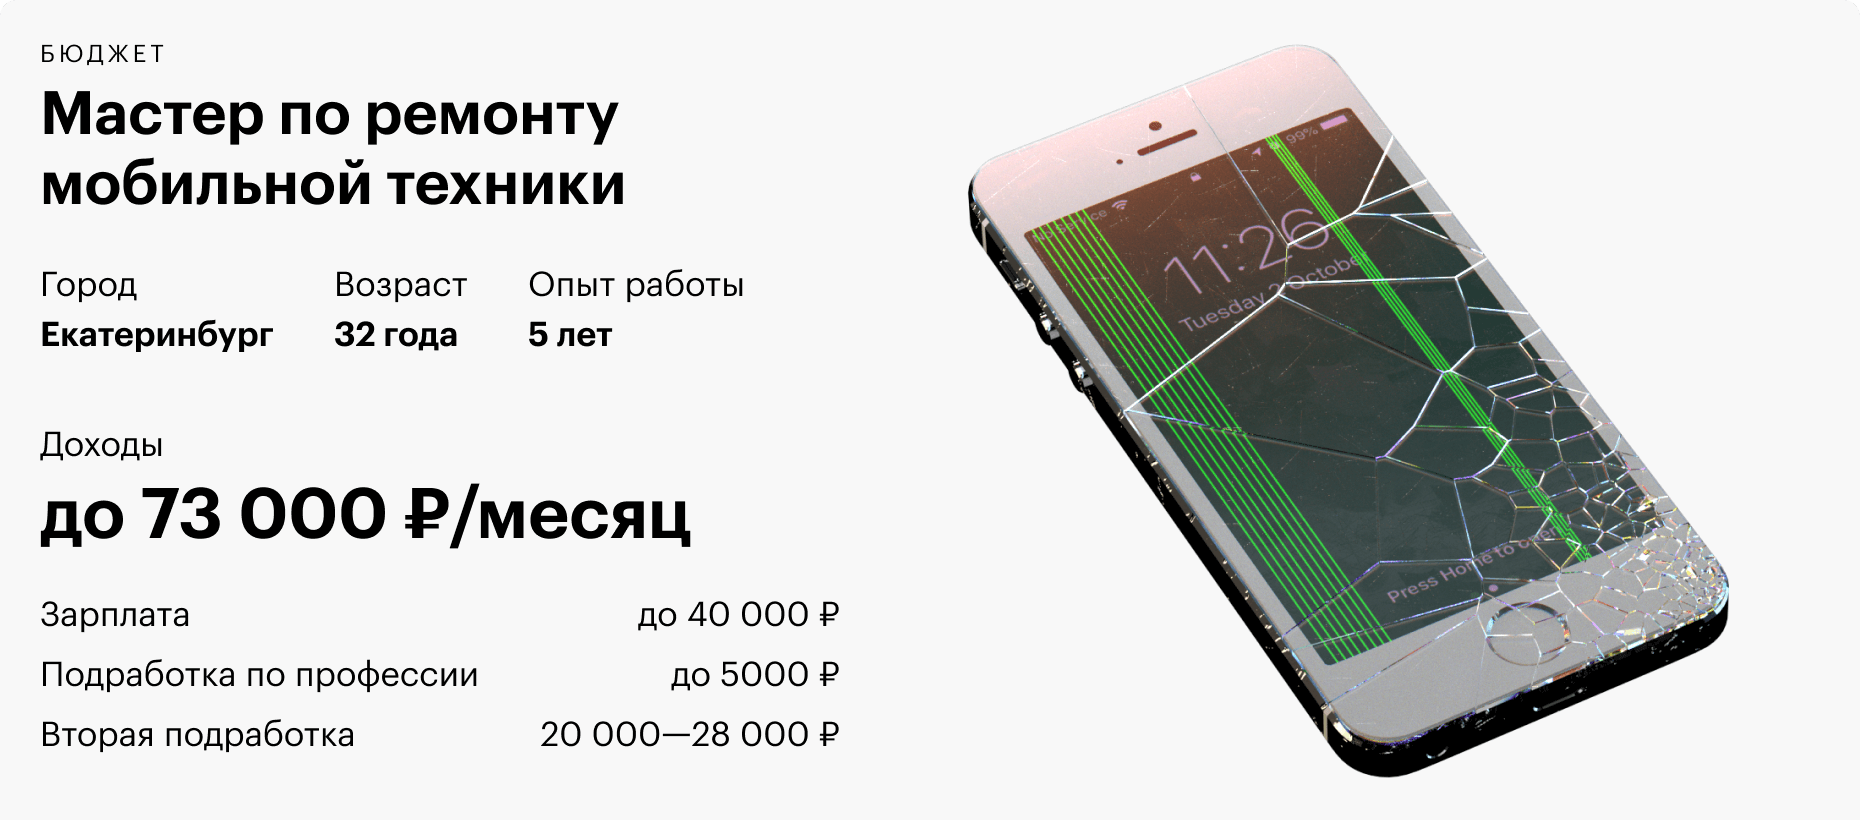 Ноутбук Дешево Екатеринбург